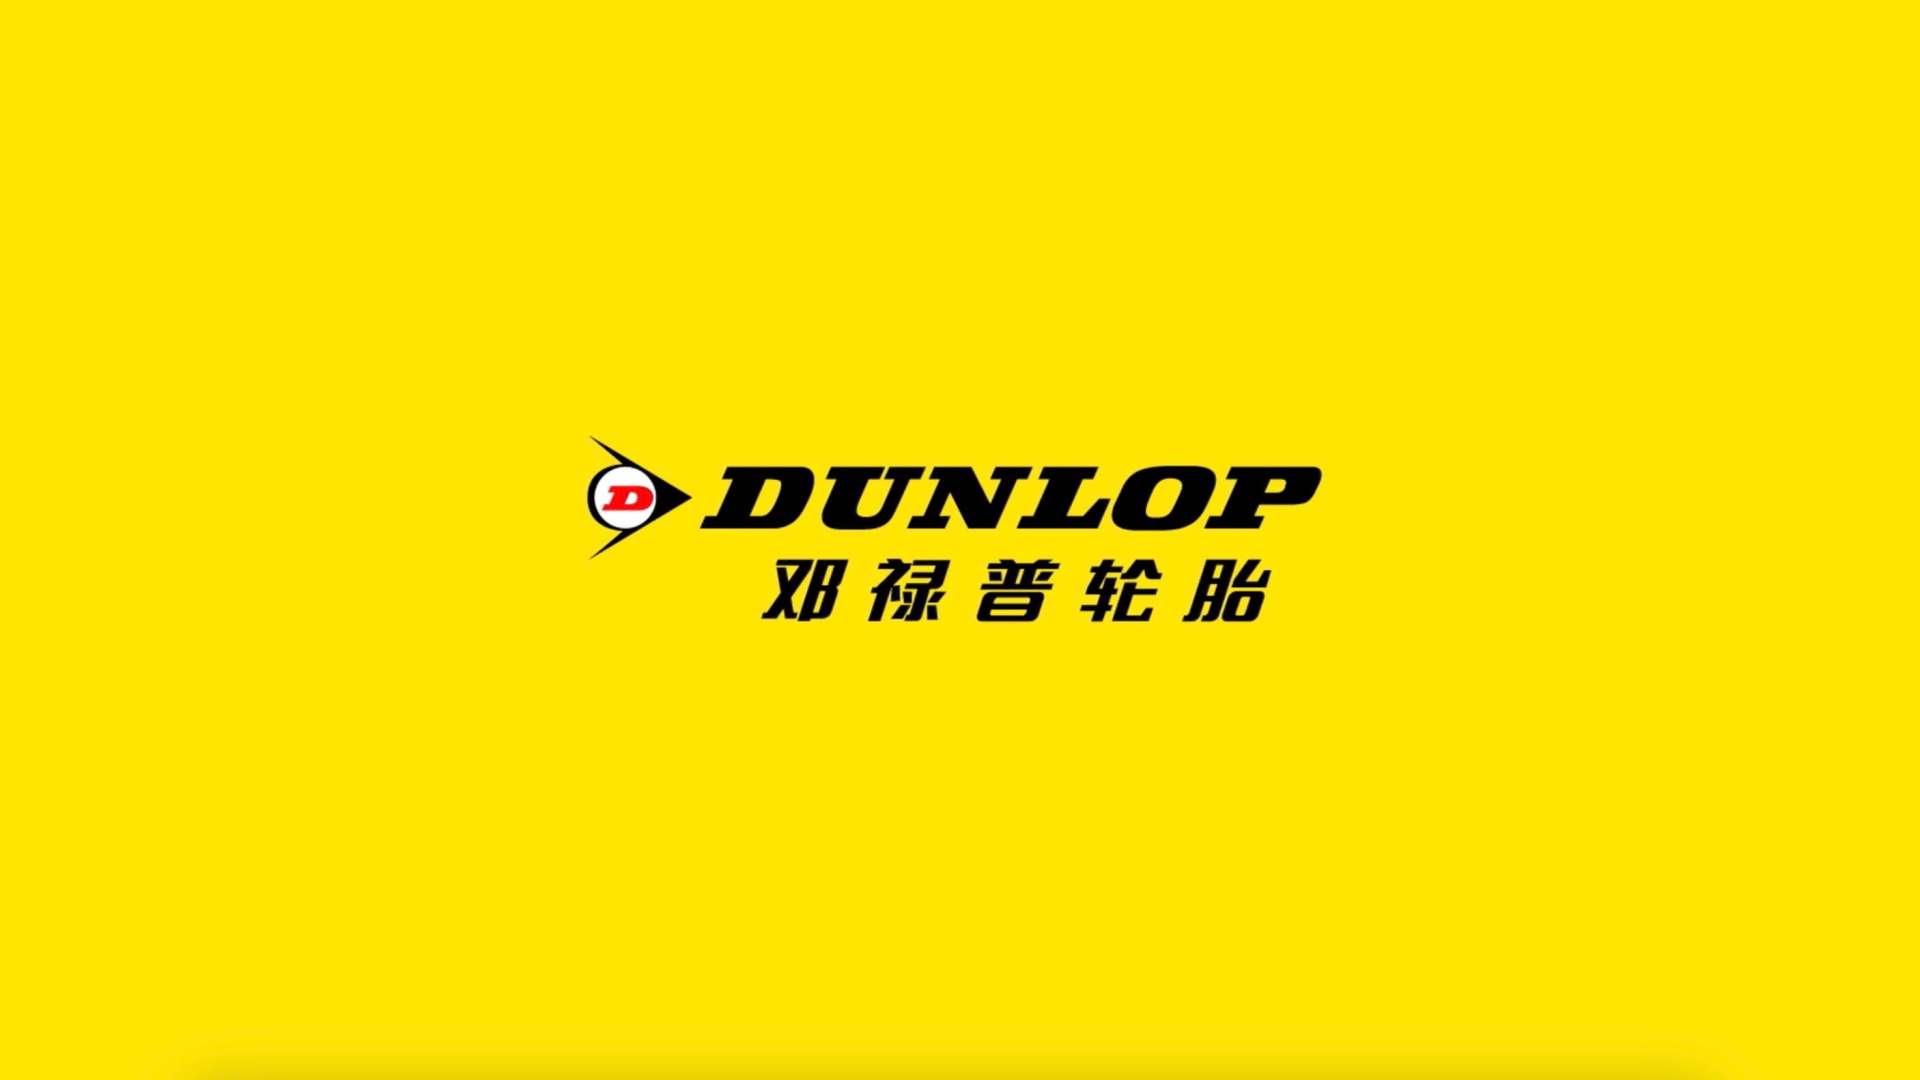 Dunlop Brand Video